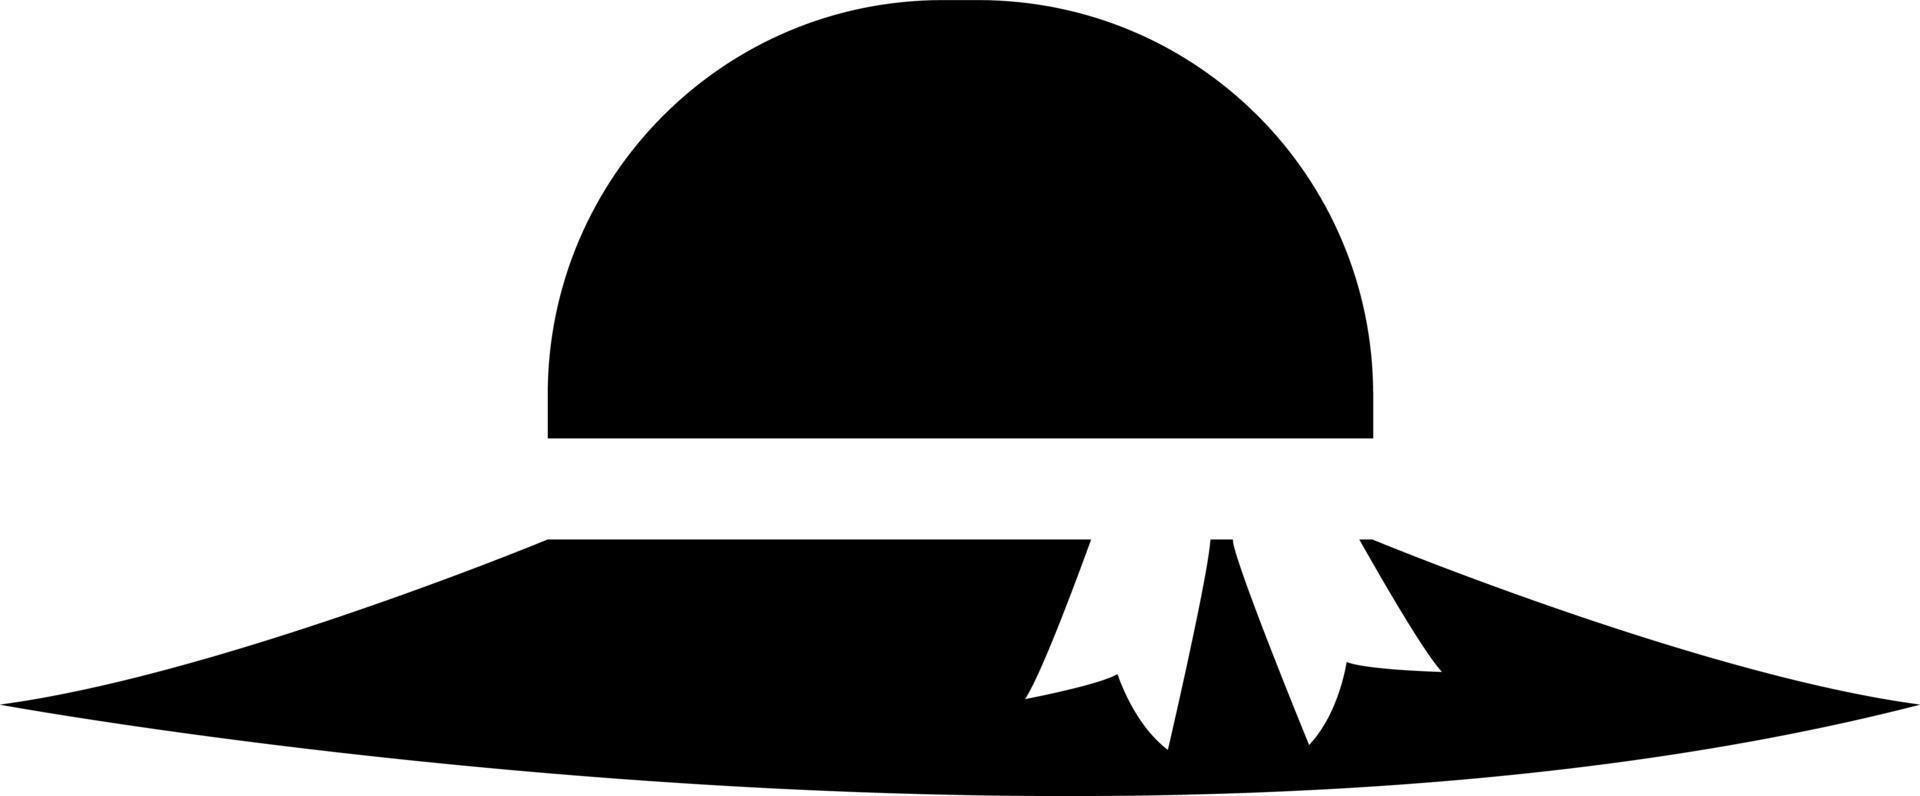 chapéu de praia preto, ilustração, vetor em um fundo branco